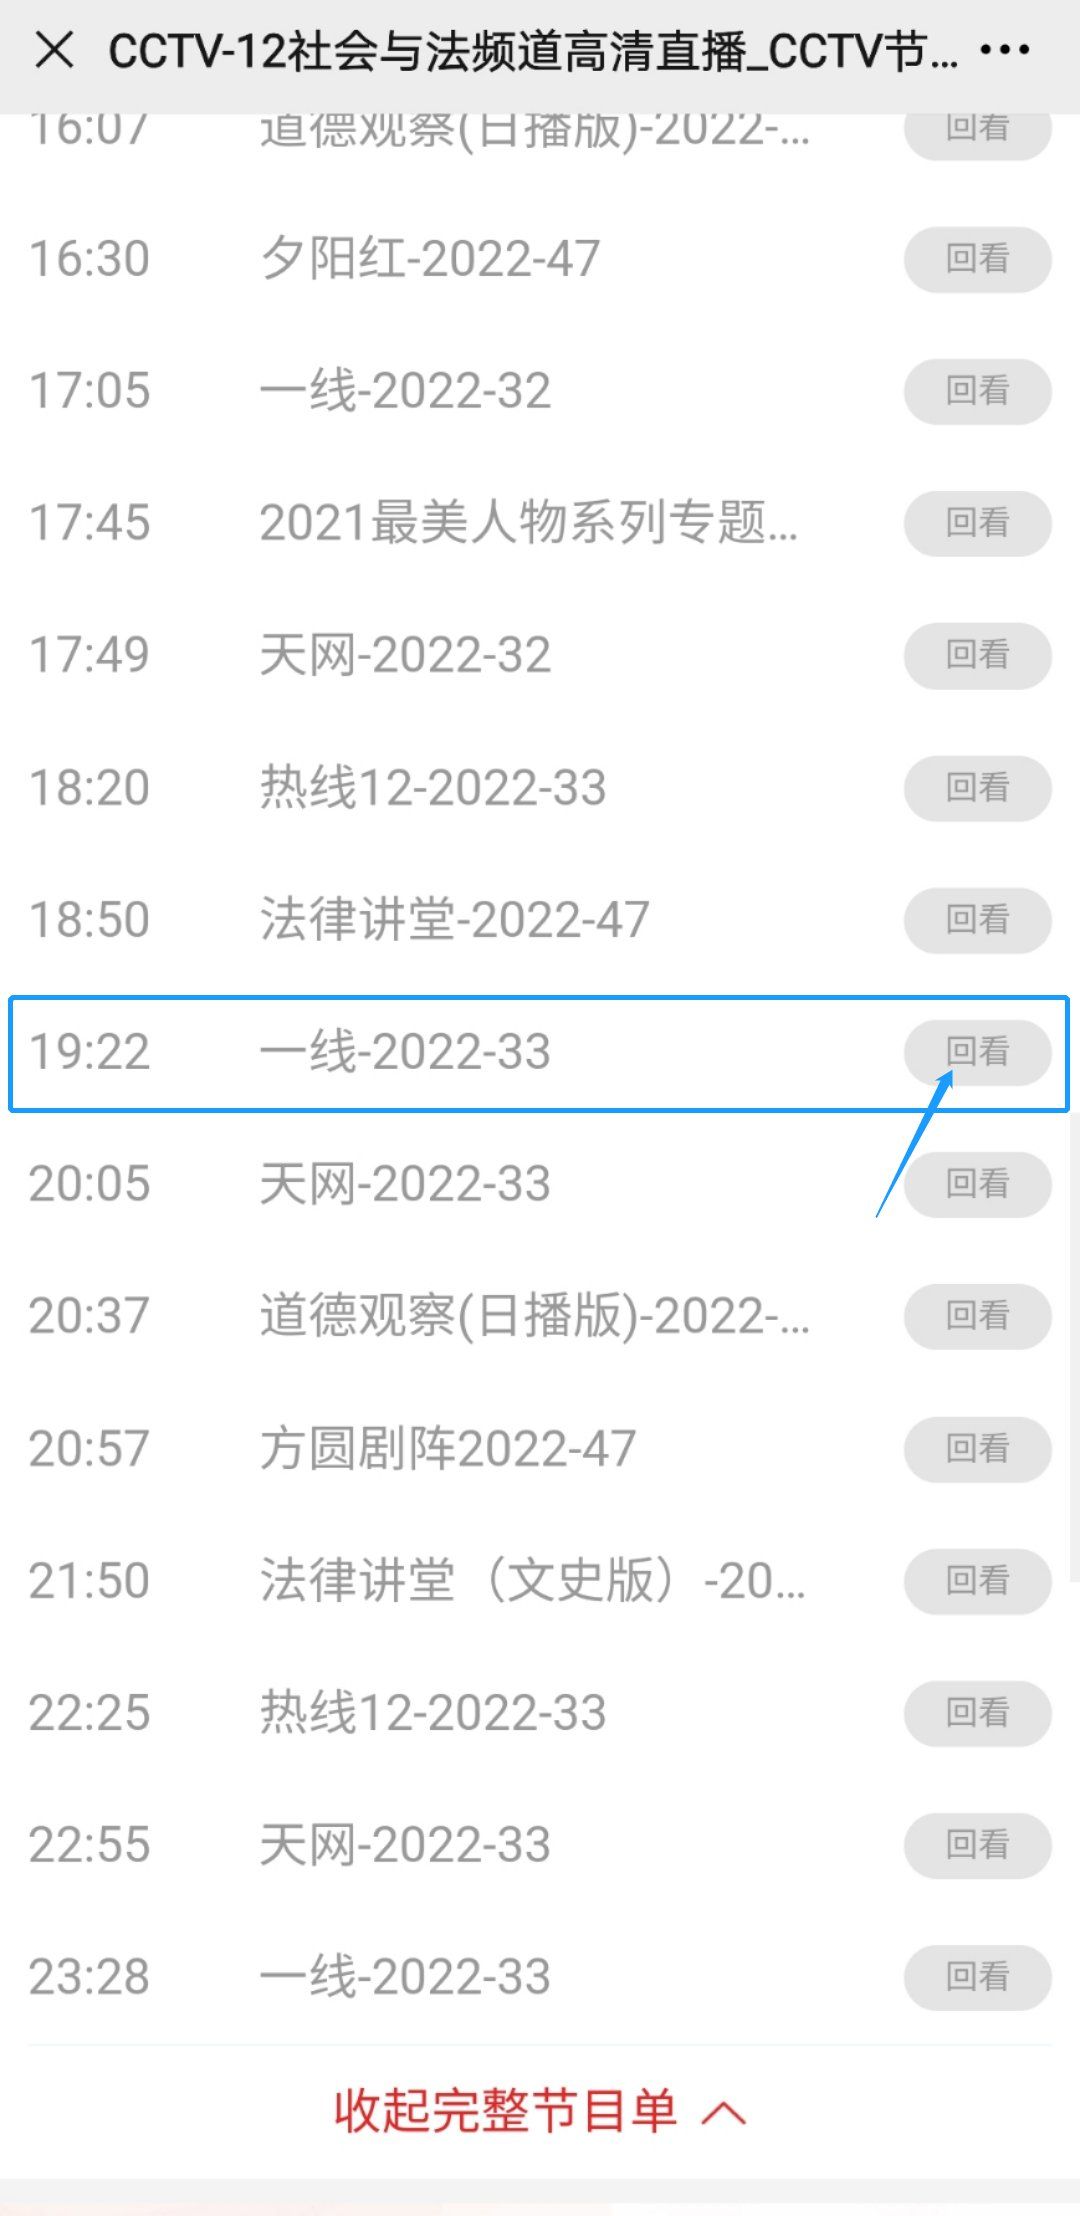 2022CCTV12扫黄打非在行动16日至18日节目如何收看回放？